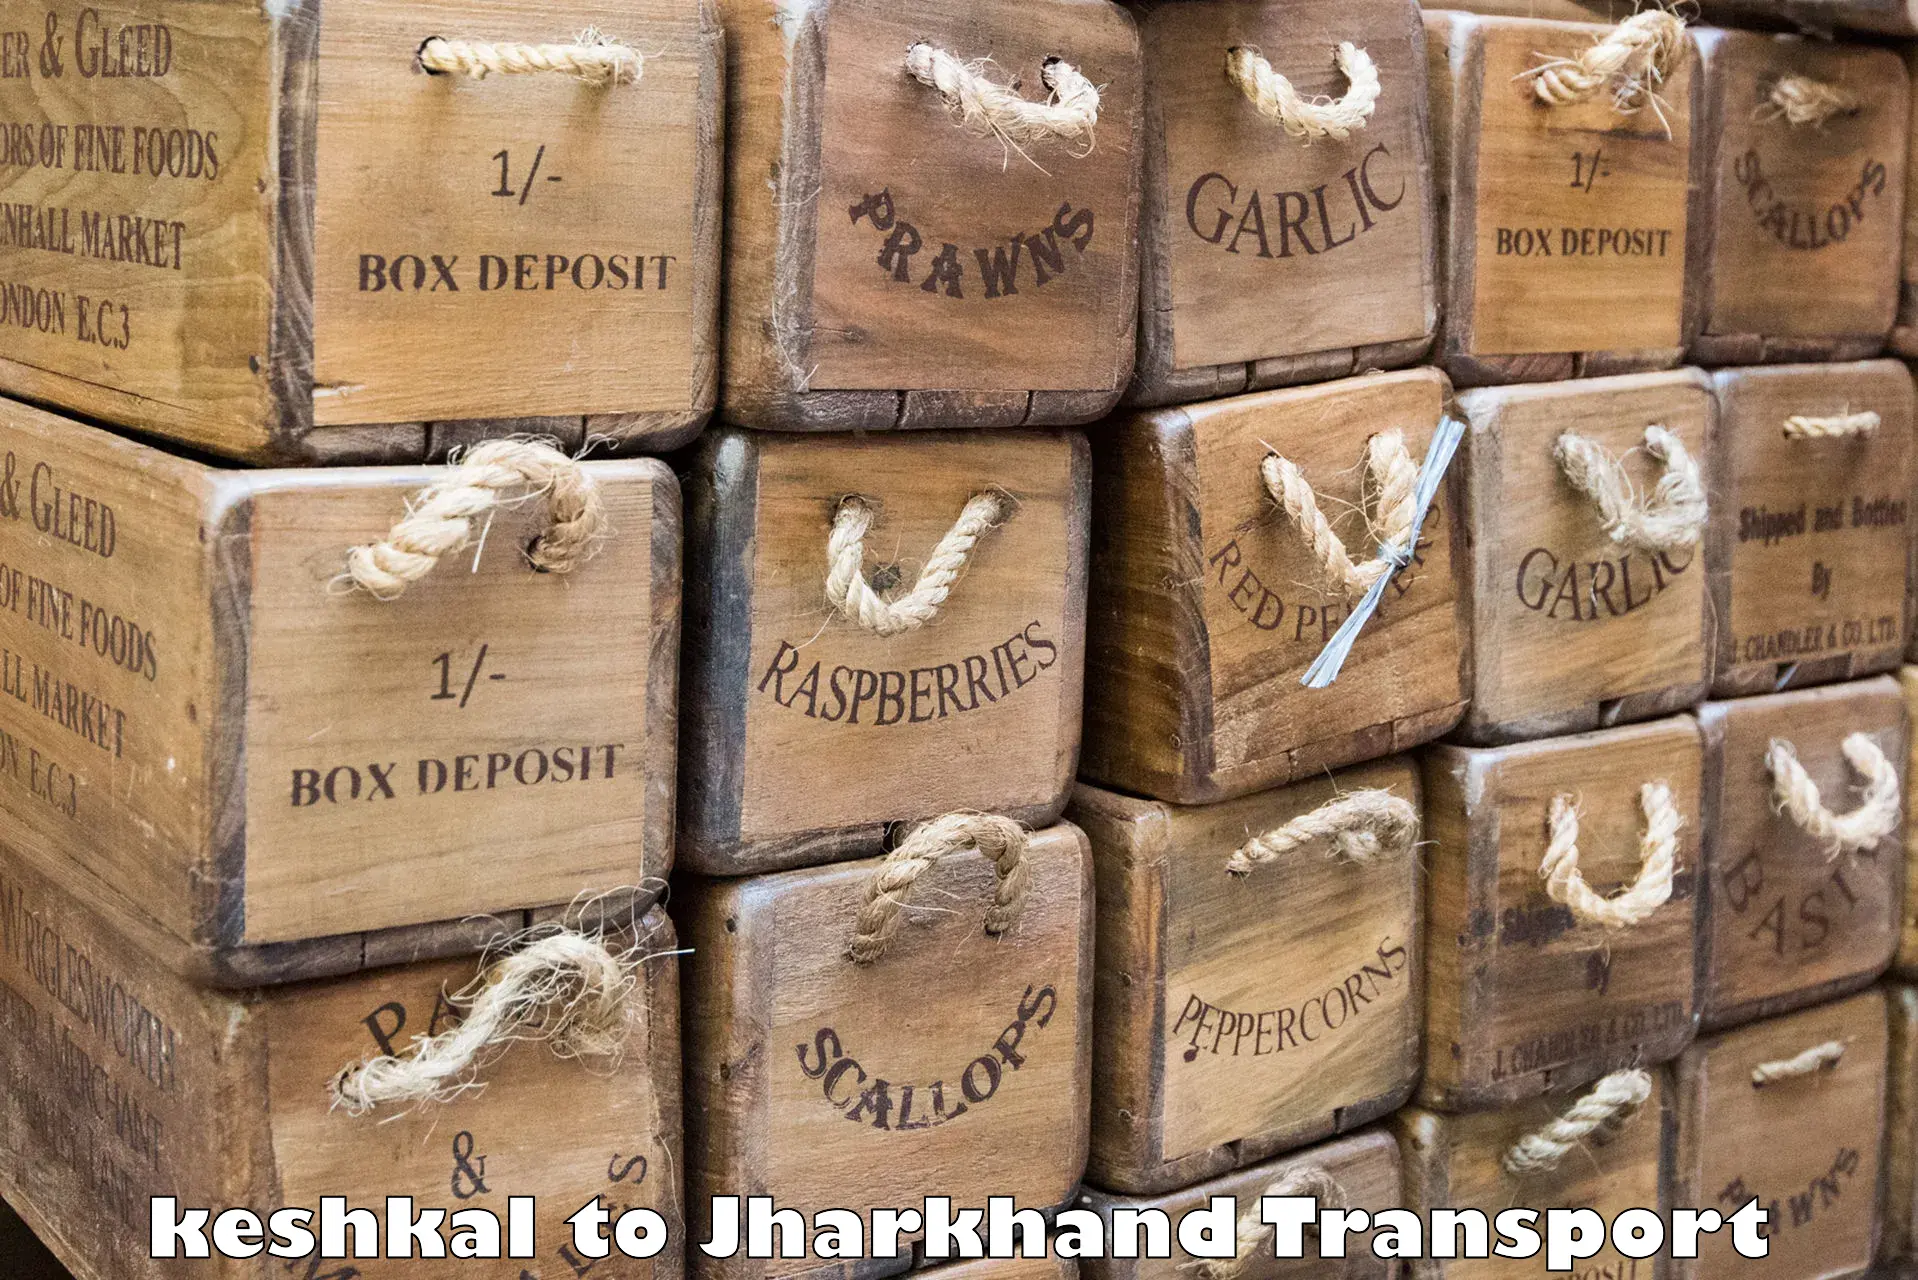 Daily parcel service transport in keshkal to Godda